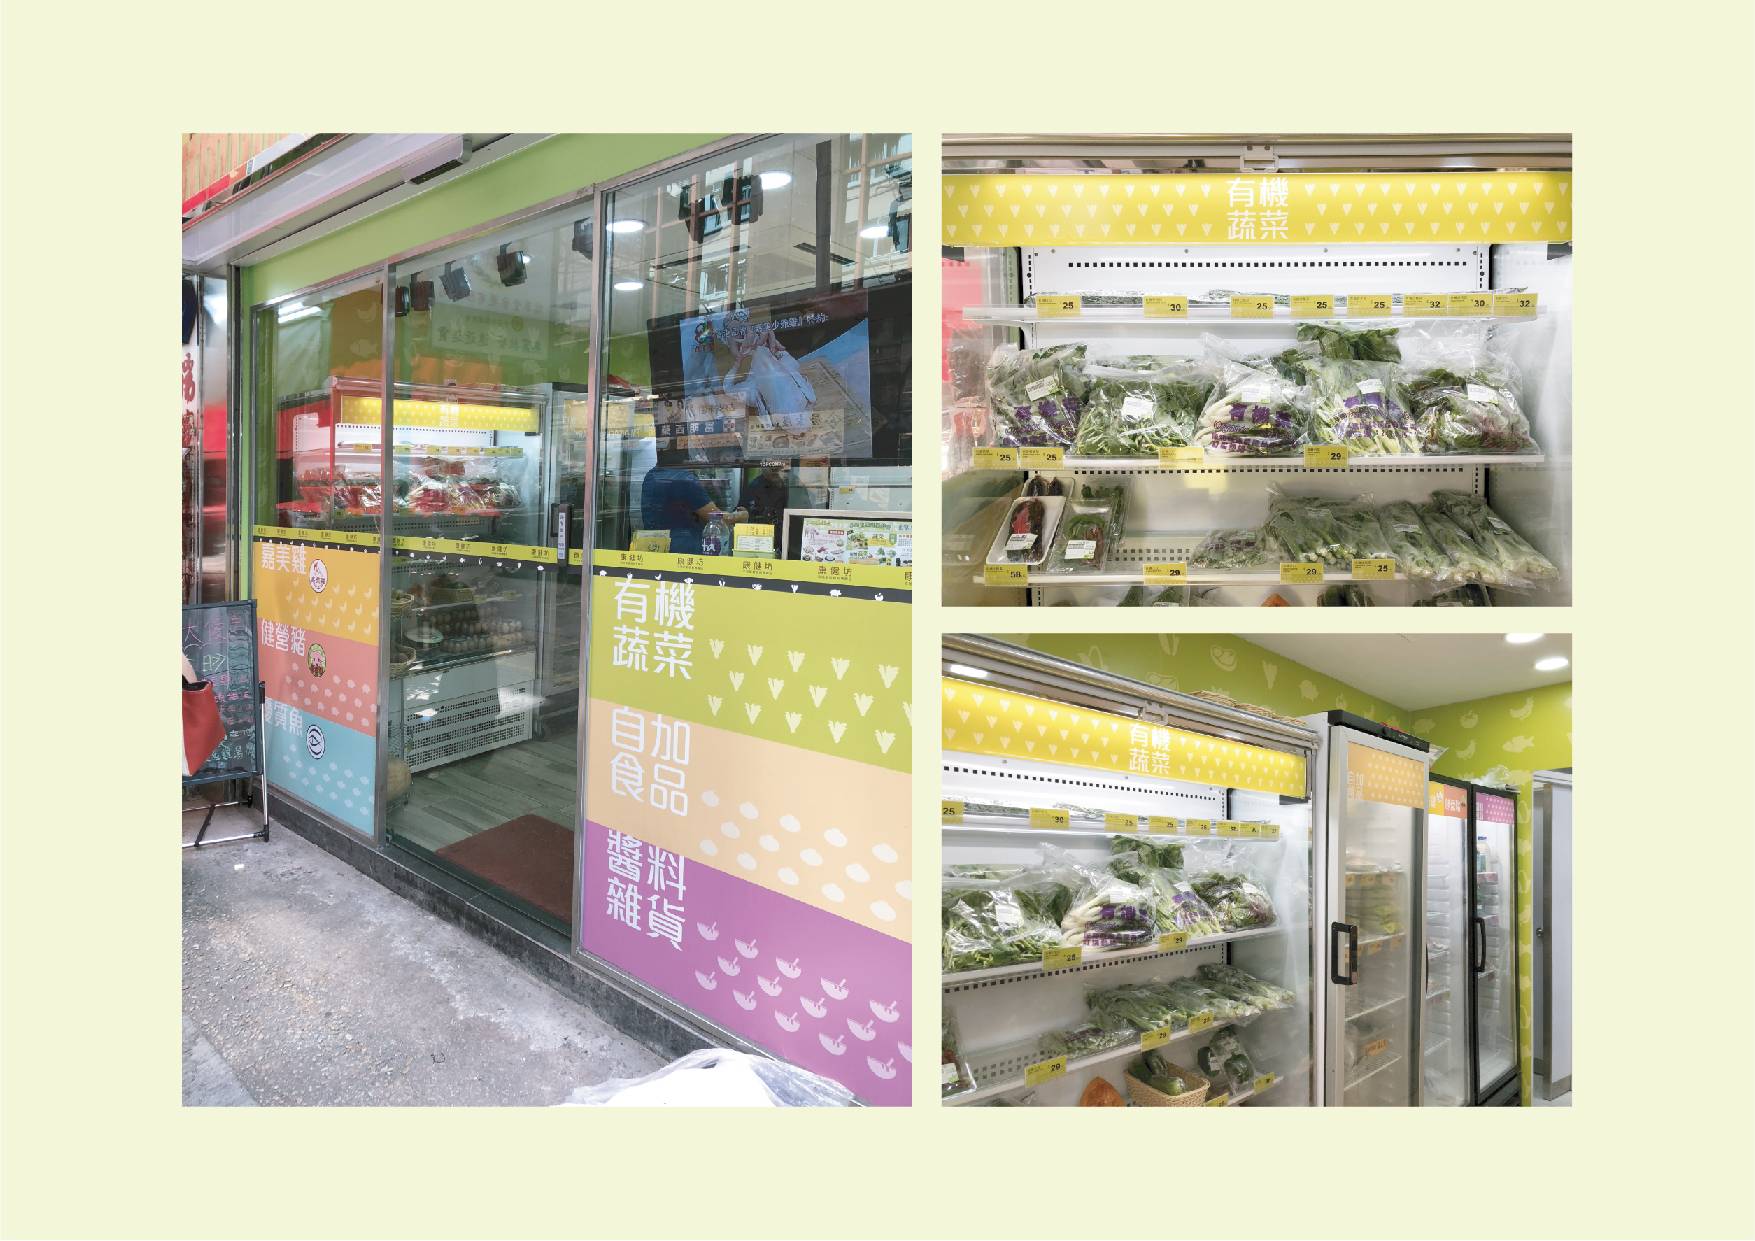 Ka Mei Chicken rebranding for store interior design